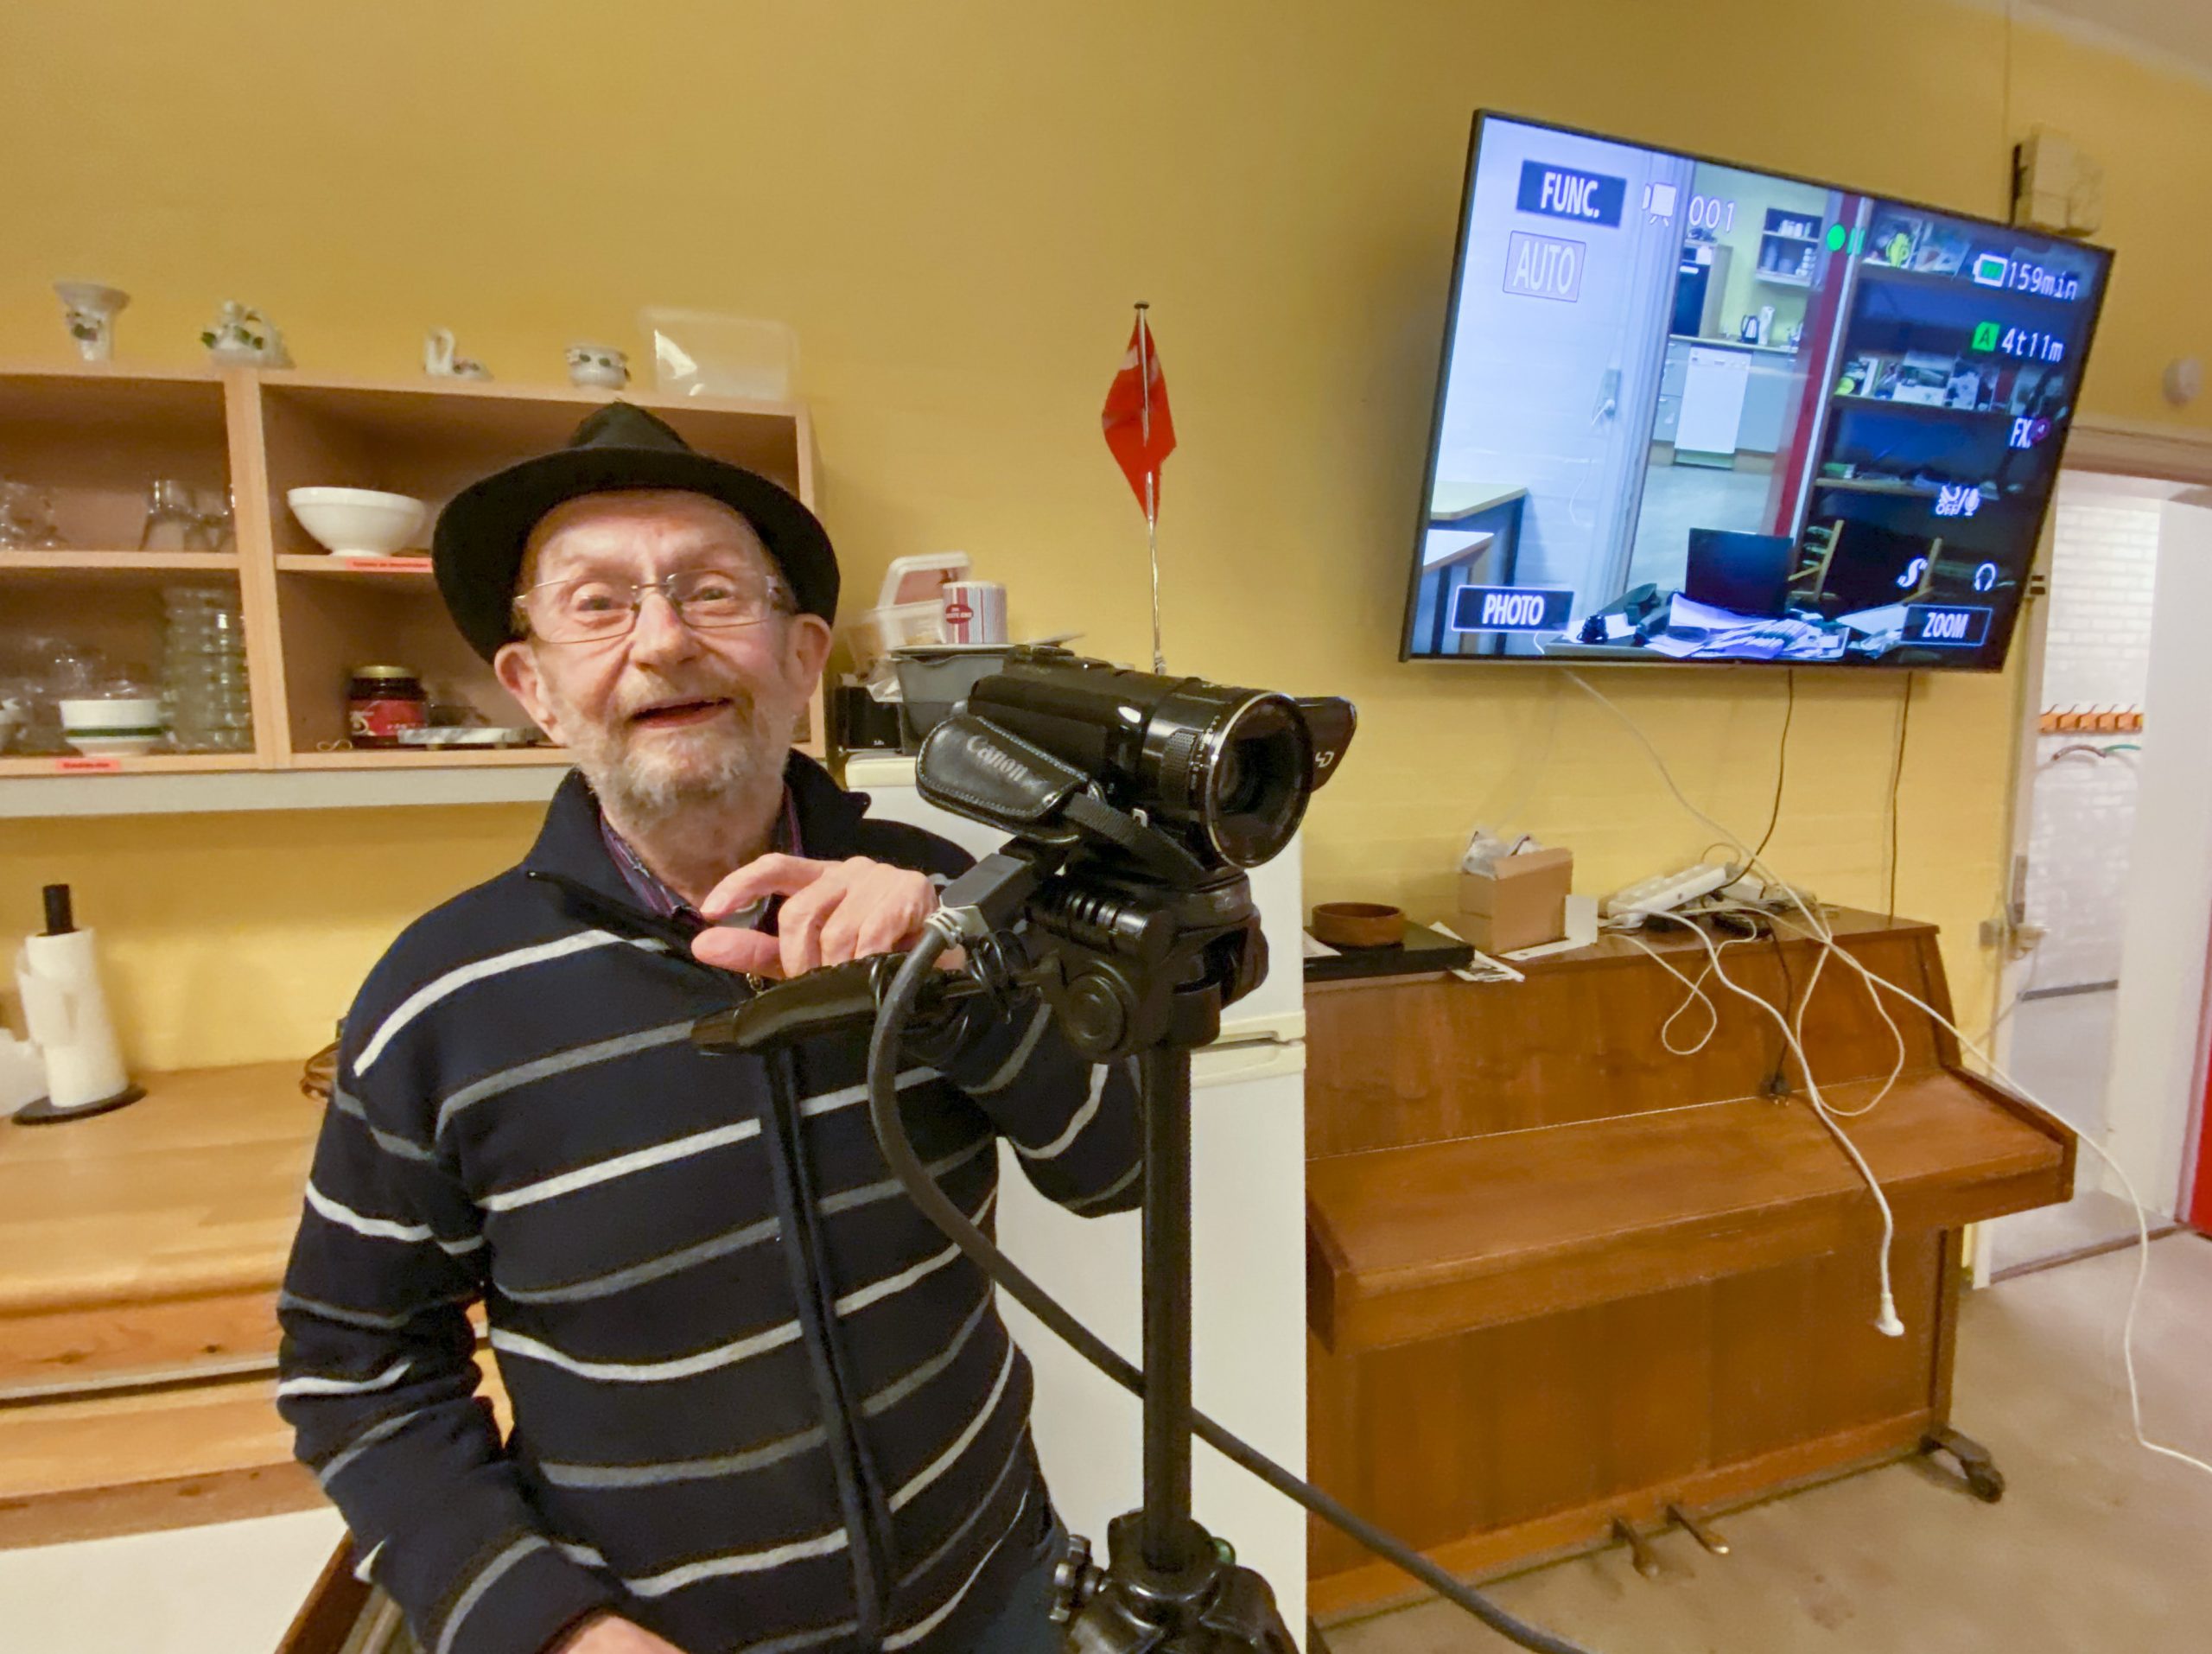 Johnny Bjørnestad står parat denne mandag med to videokameraer til direkte transmission mellem to rum. Det er testet!